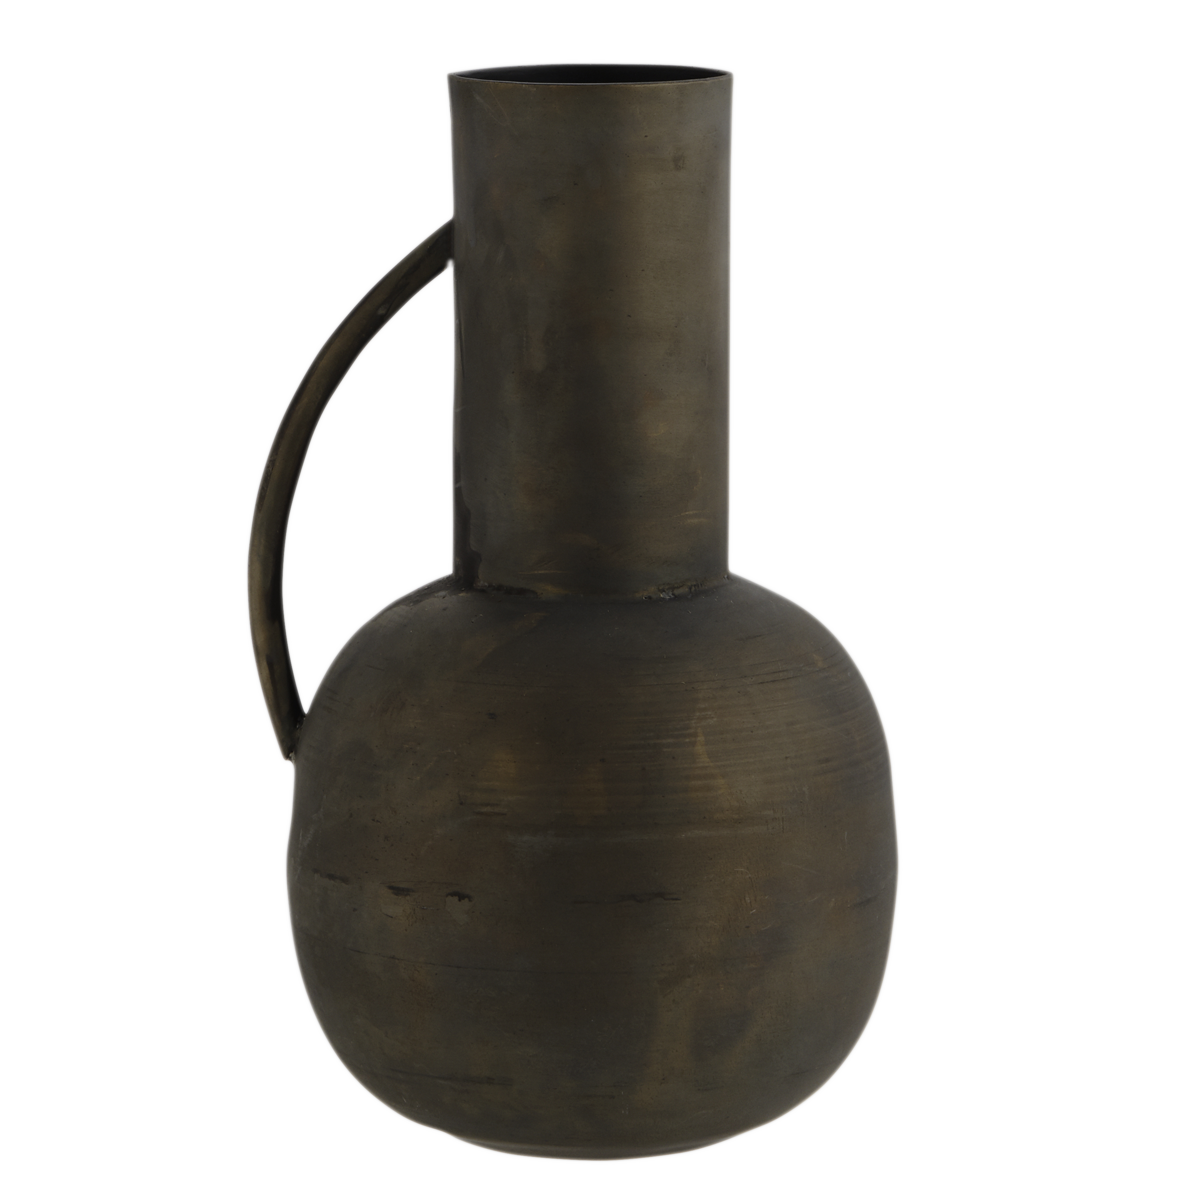 Iron vase w/ handle